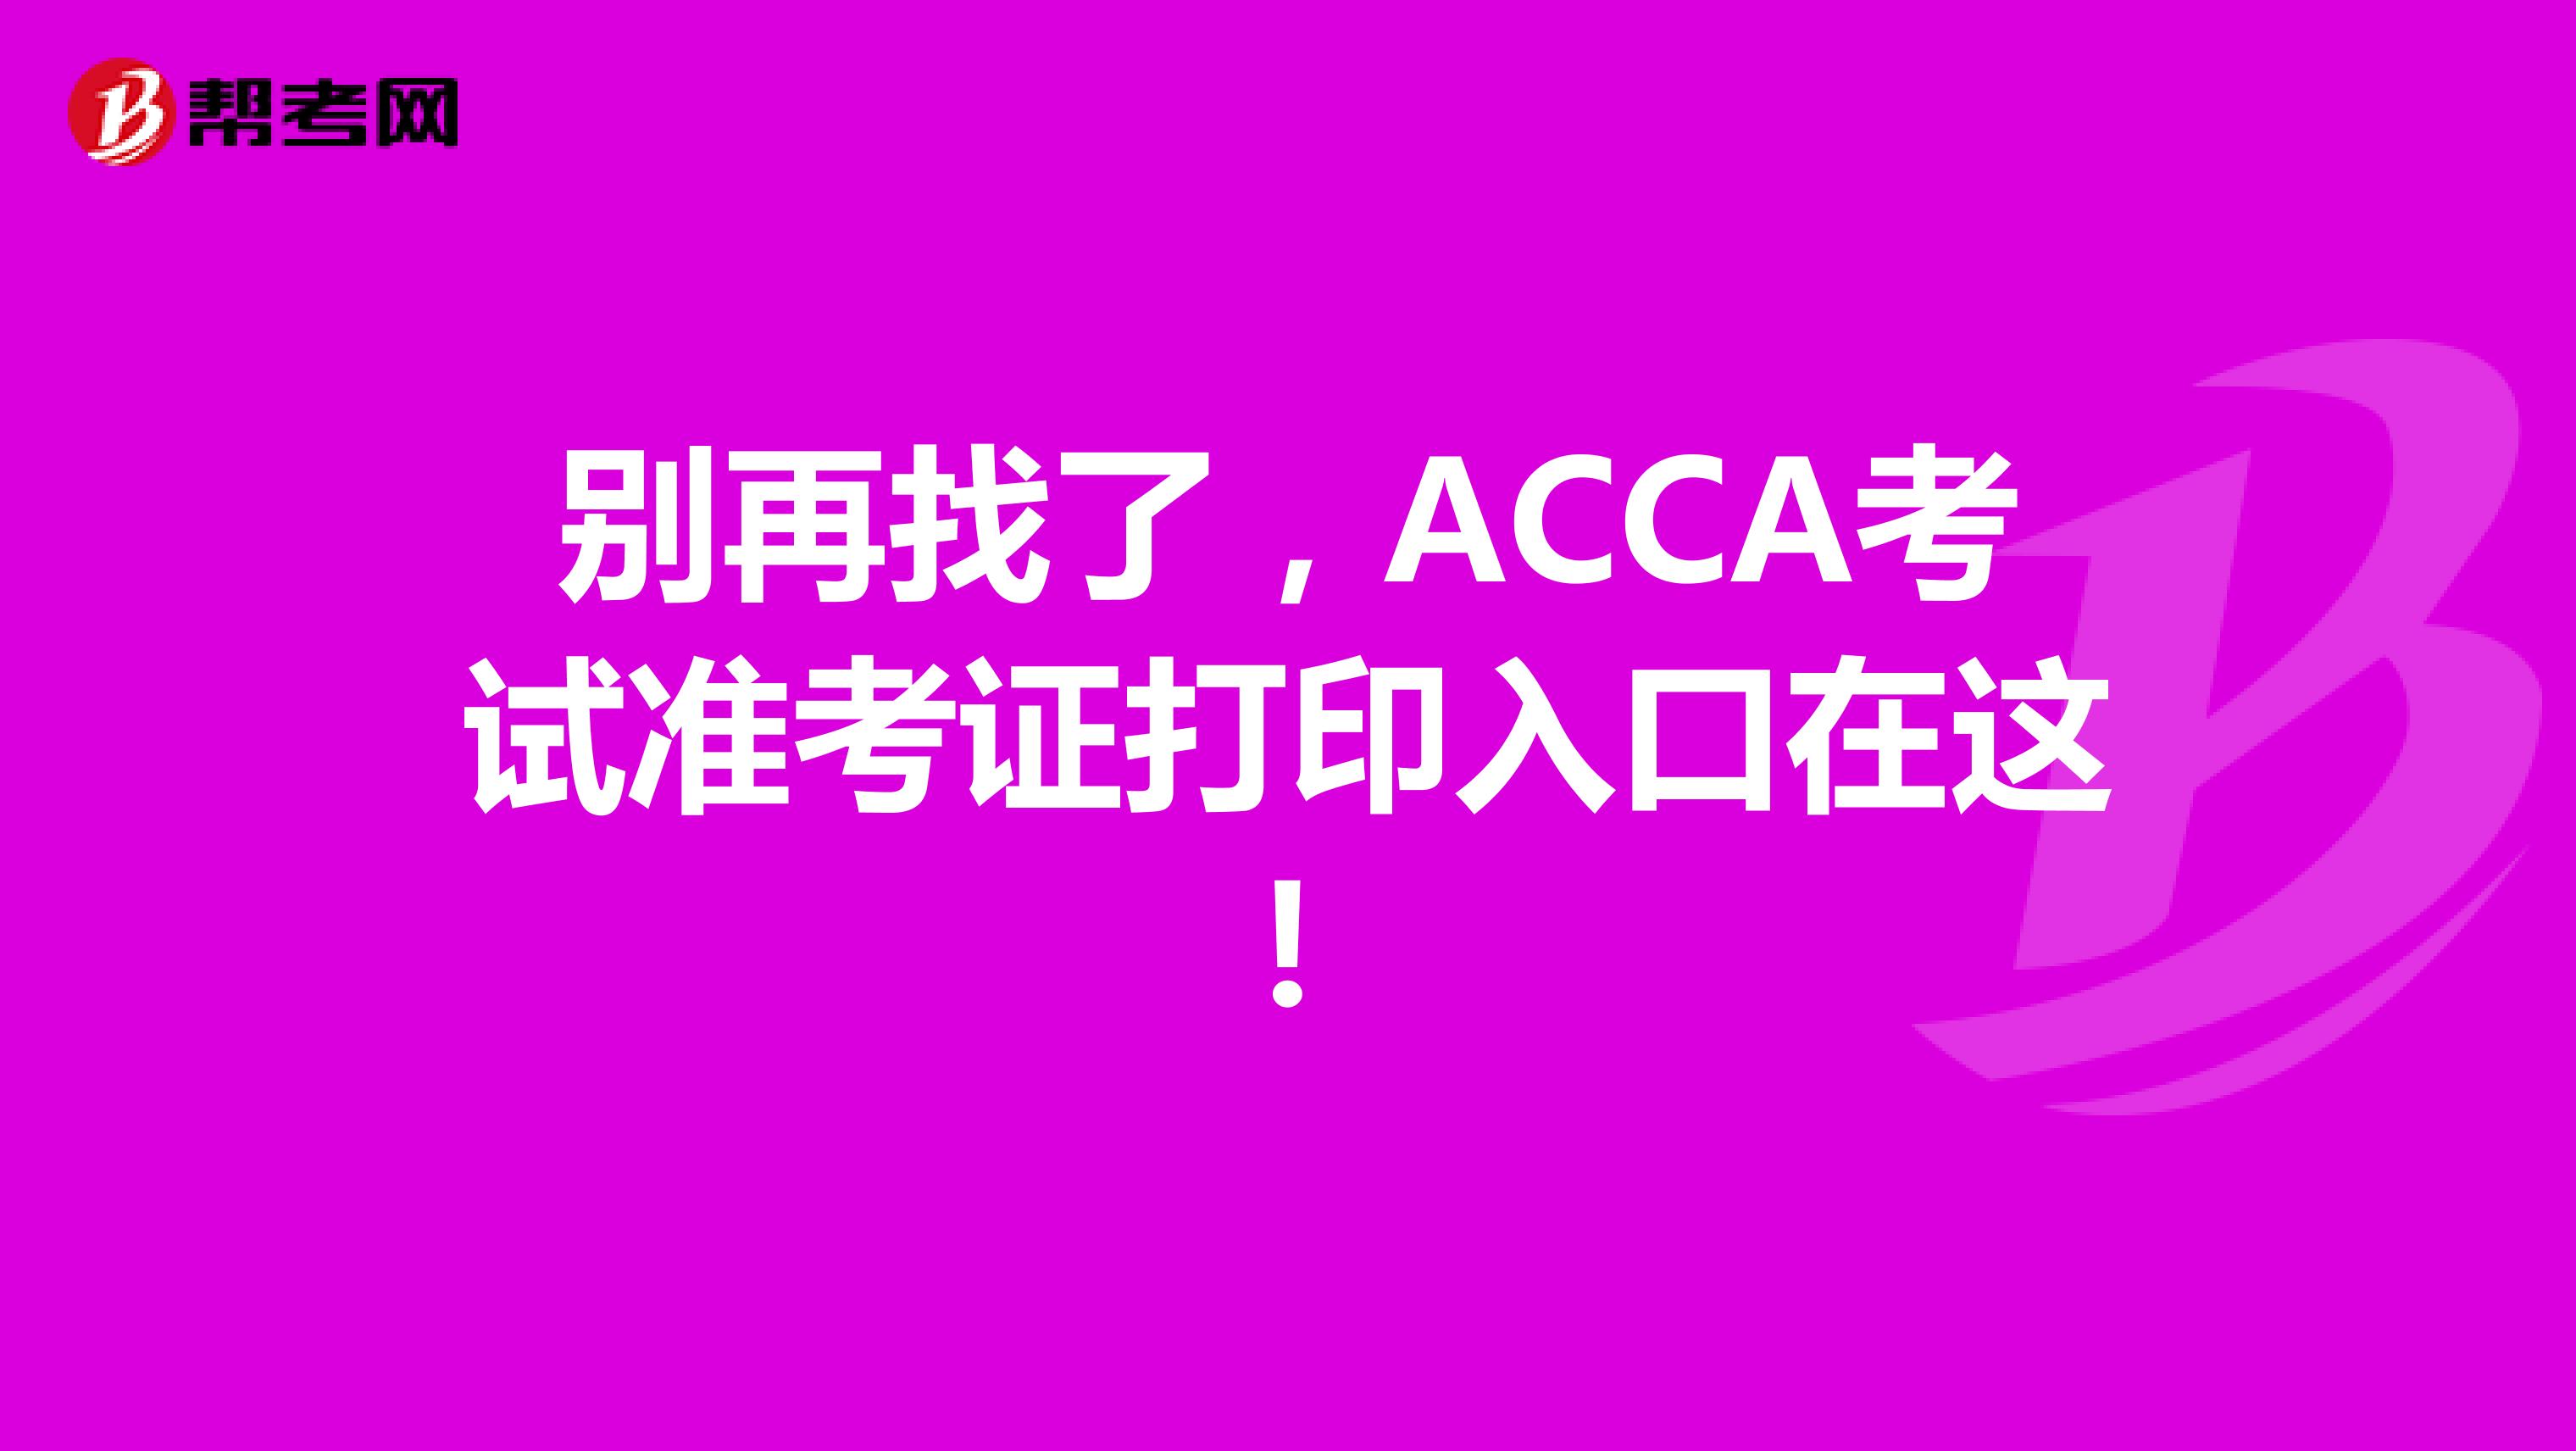 别再找了，ACCA考试准考证打印入口在这！